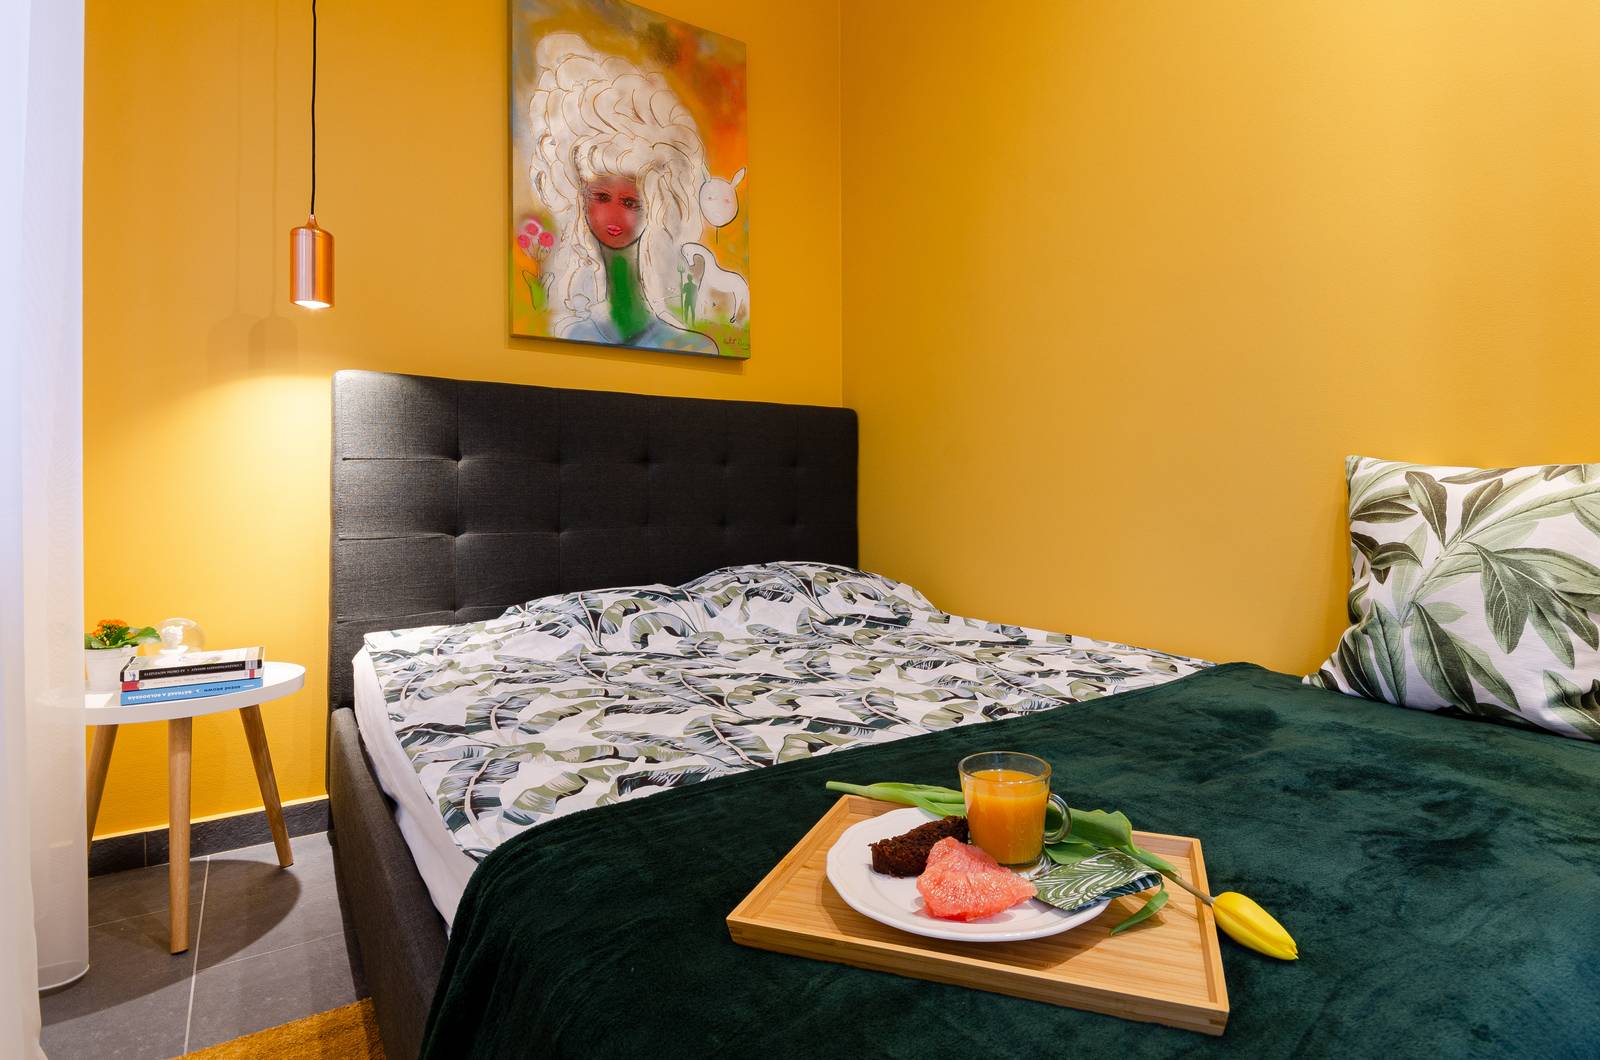 Khung và đầu giường gam màu đen mạnh mẽ, sơn tường vàng mù tạt kết hợp chăn đắp xanh ngọc lục bảo tạo sự kết nối nhất định về màu sắc với nội thất phòng khách.